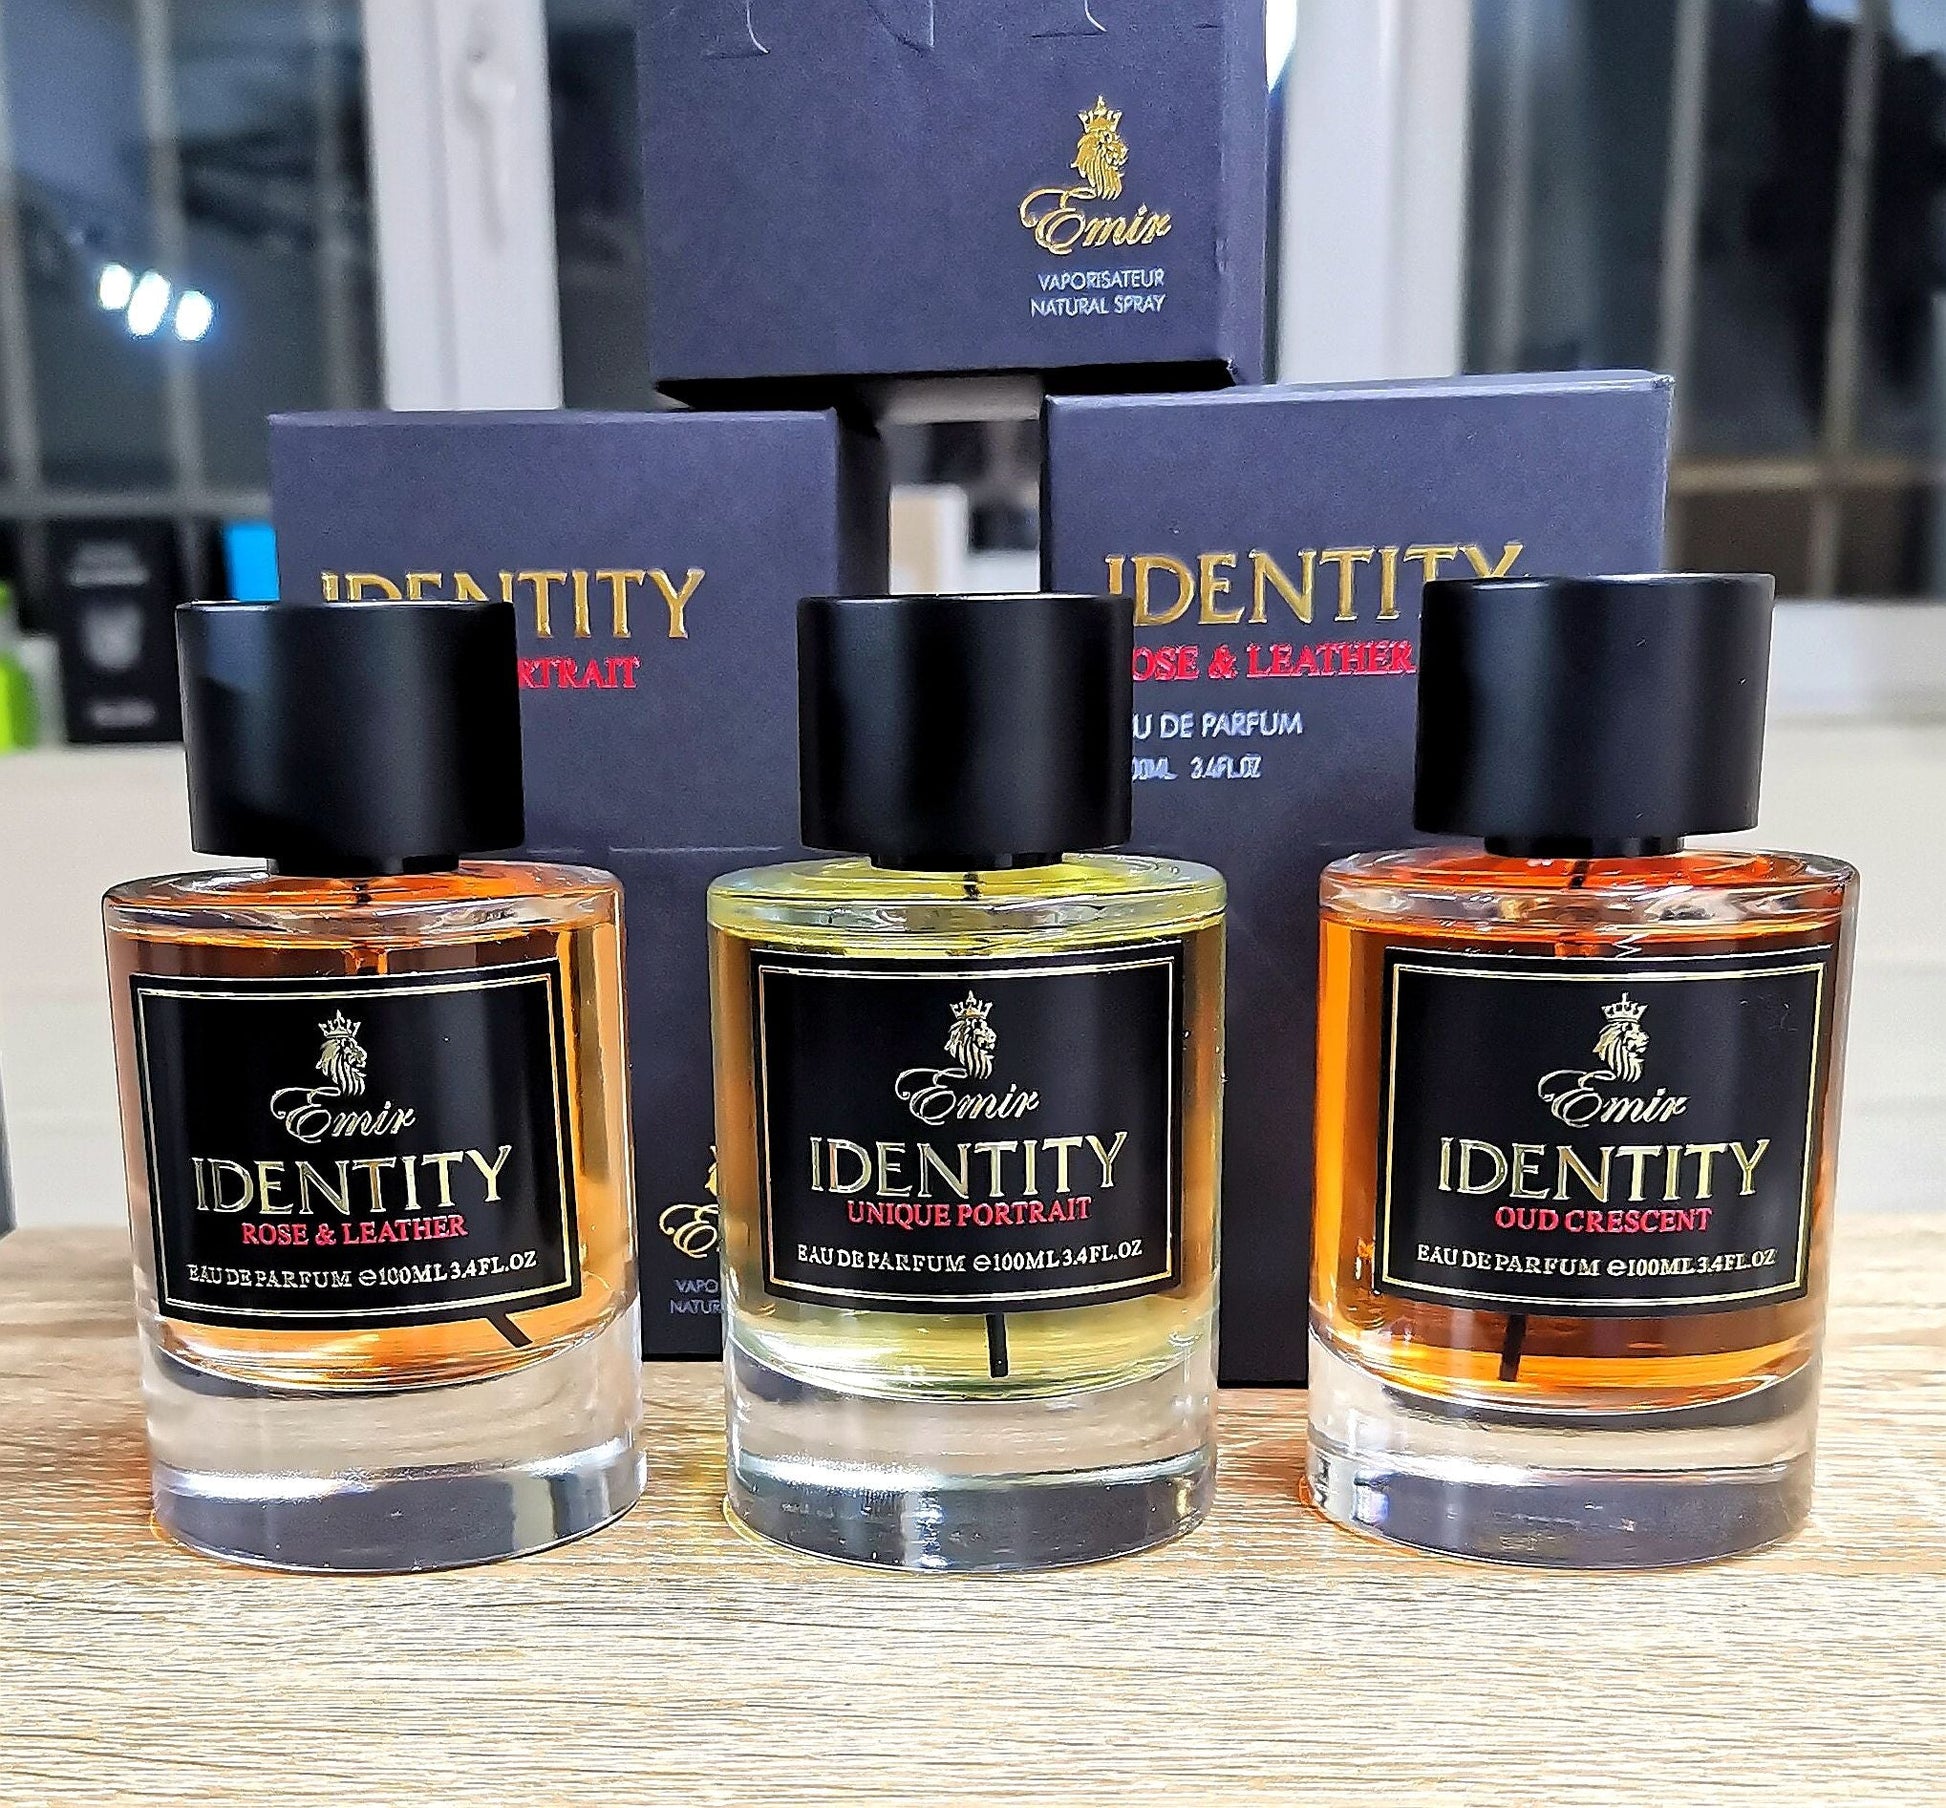 Identity Unique Portrait Fragrance For Women 